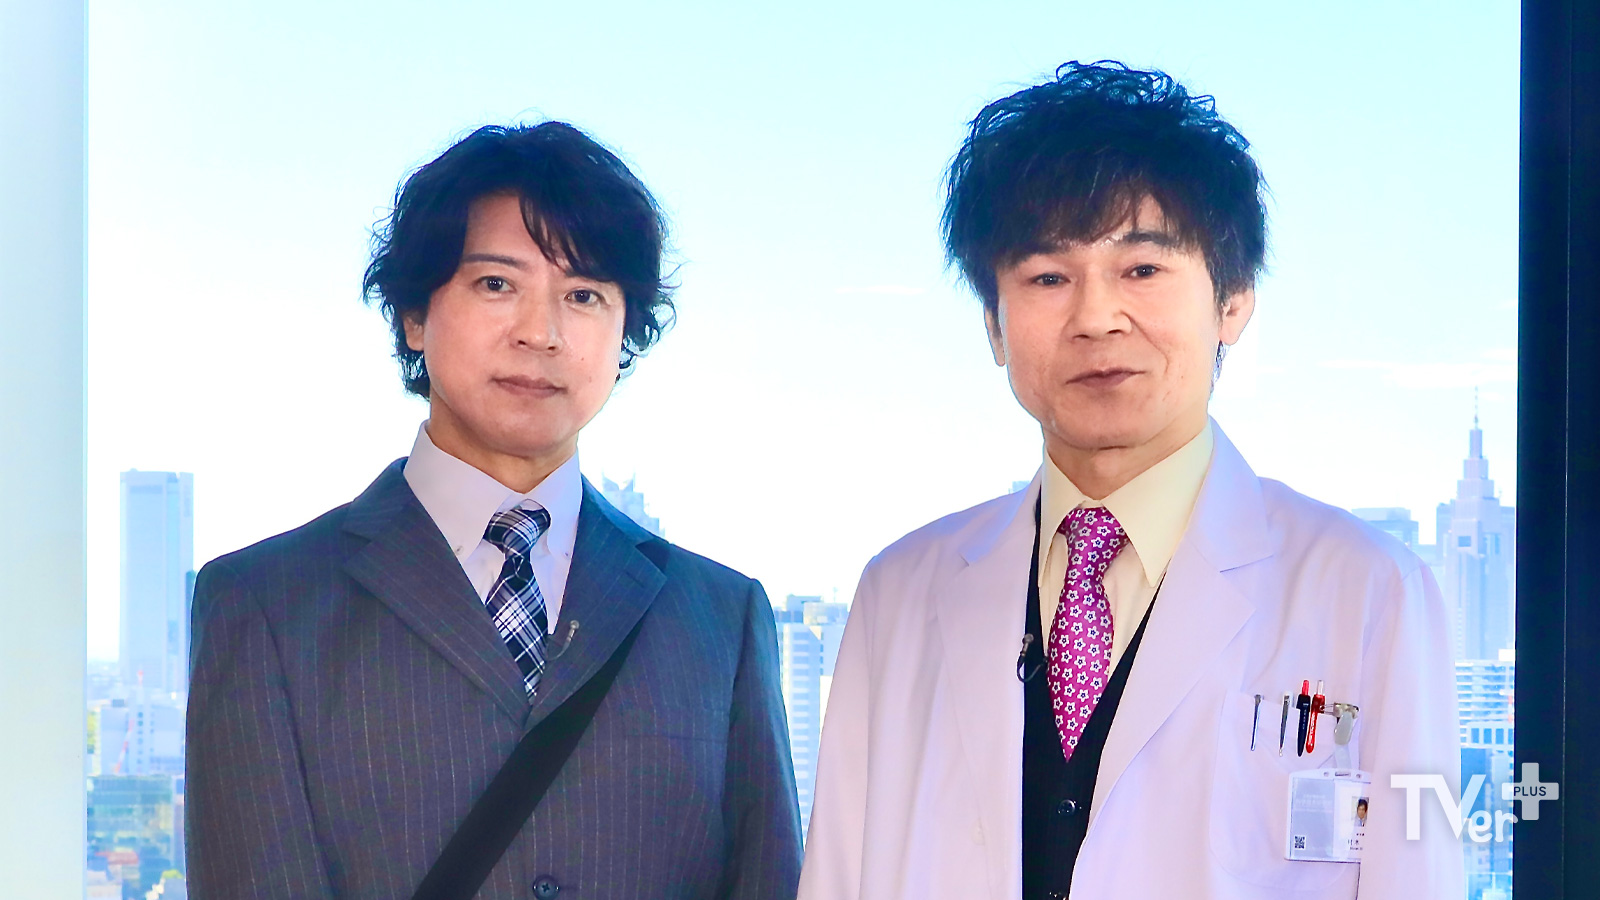 上川隆也×甲本雅裕インタビュー『遺留捜査』SPが「ジョーカーを切ってきました」